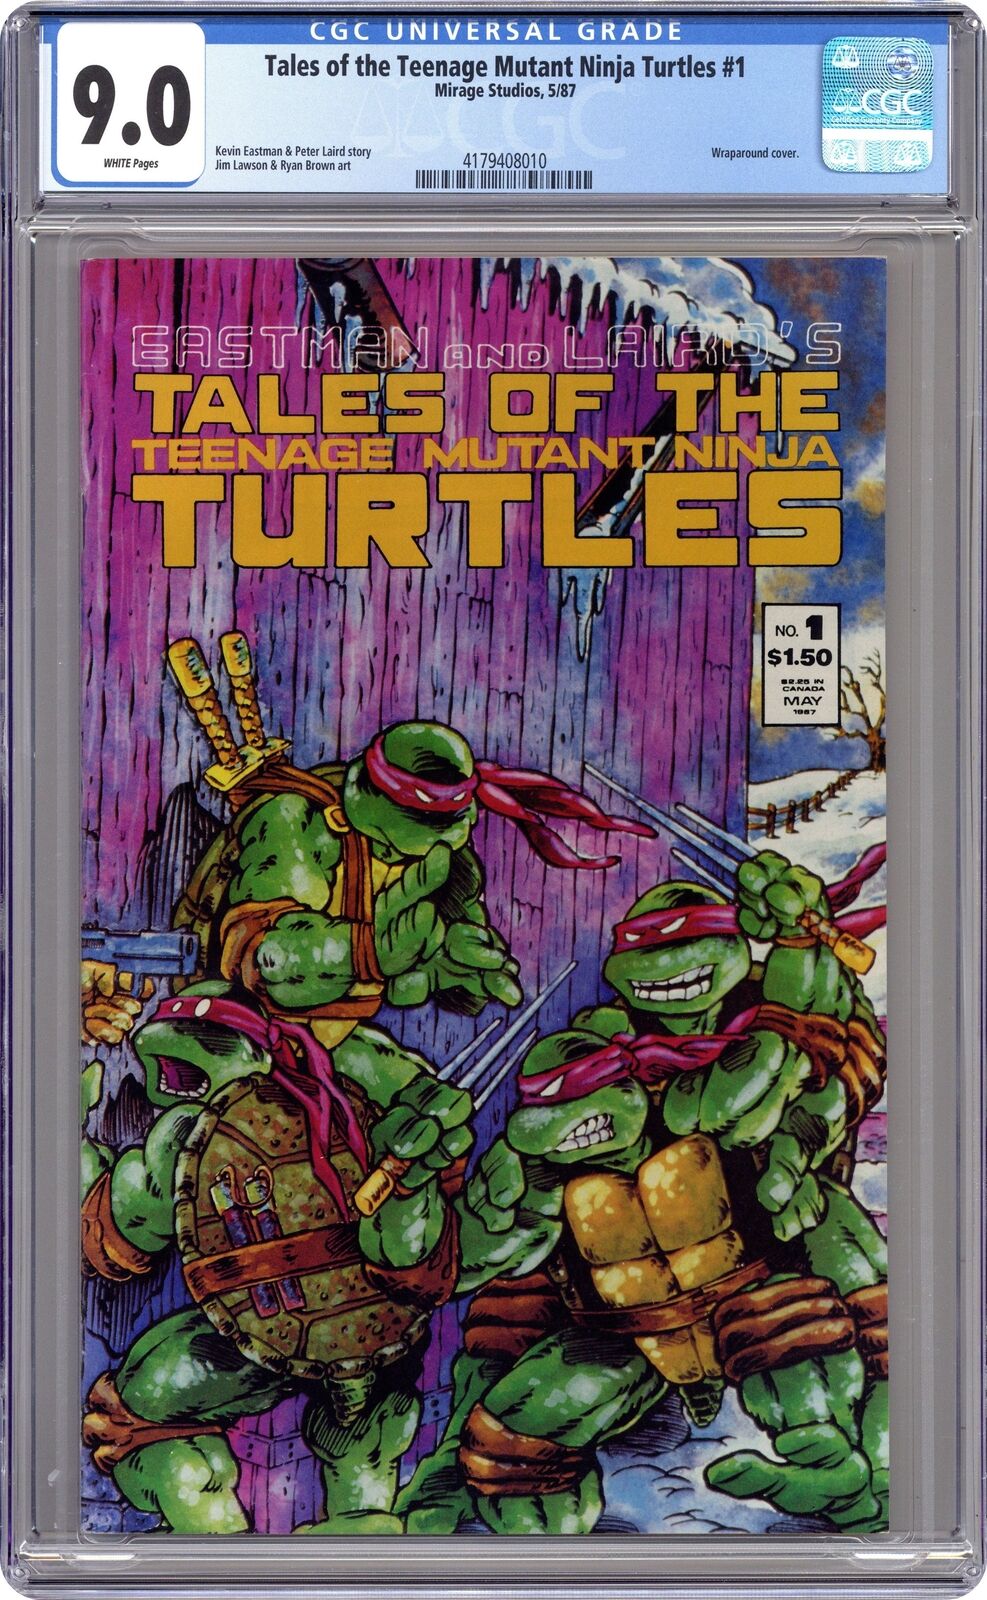 Tales of the Teenage Mutant Ninja Turtles #1 CGC 9.0 1987 4179408010